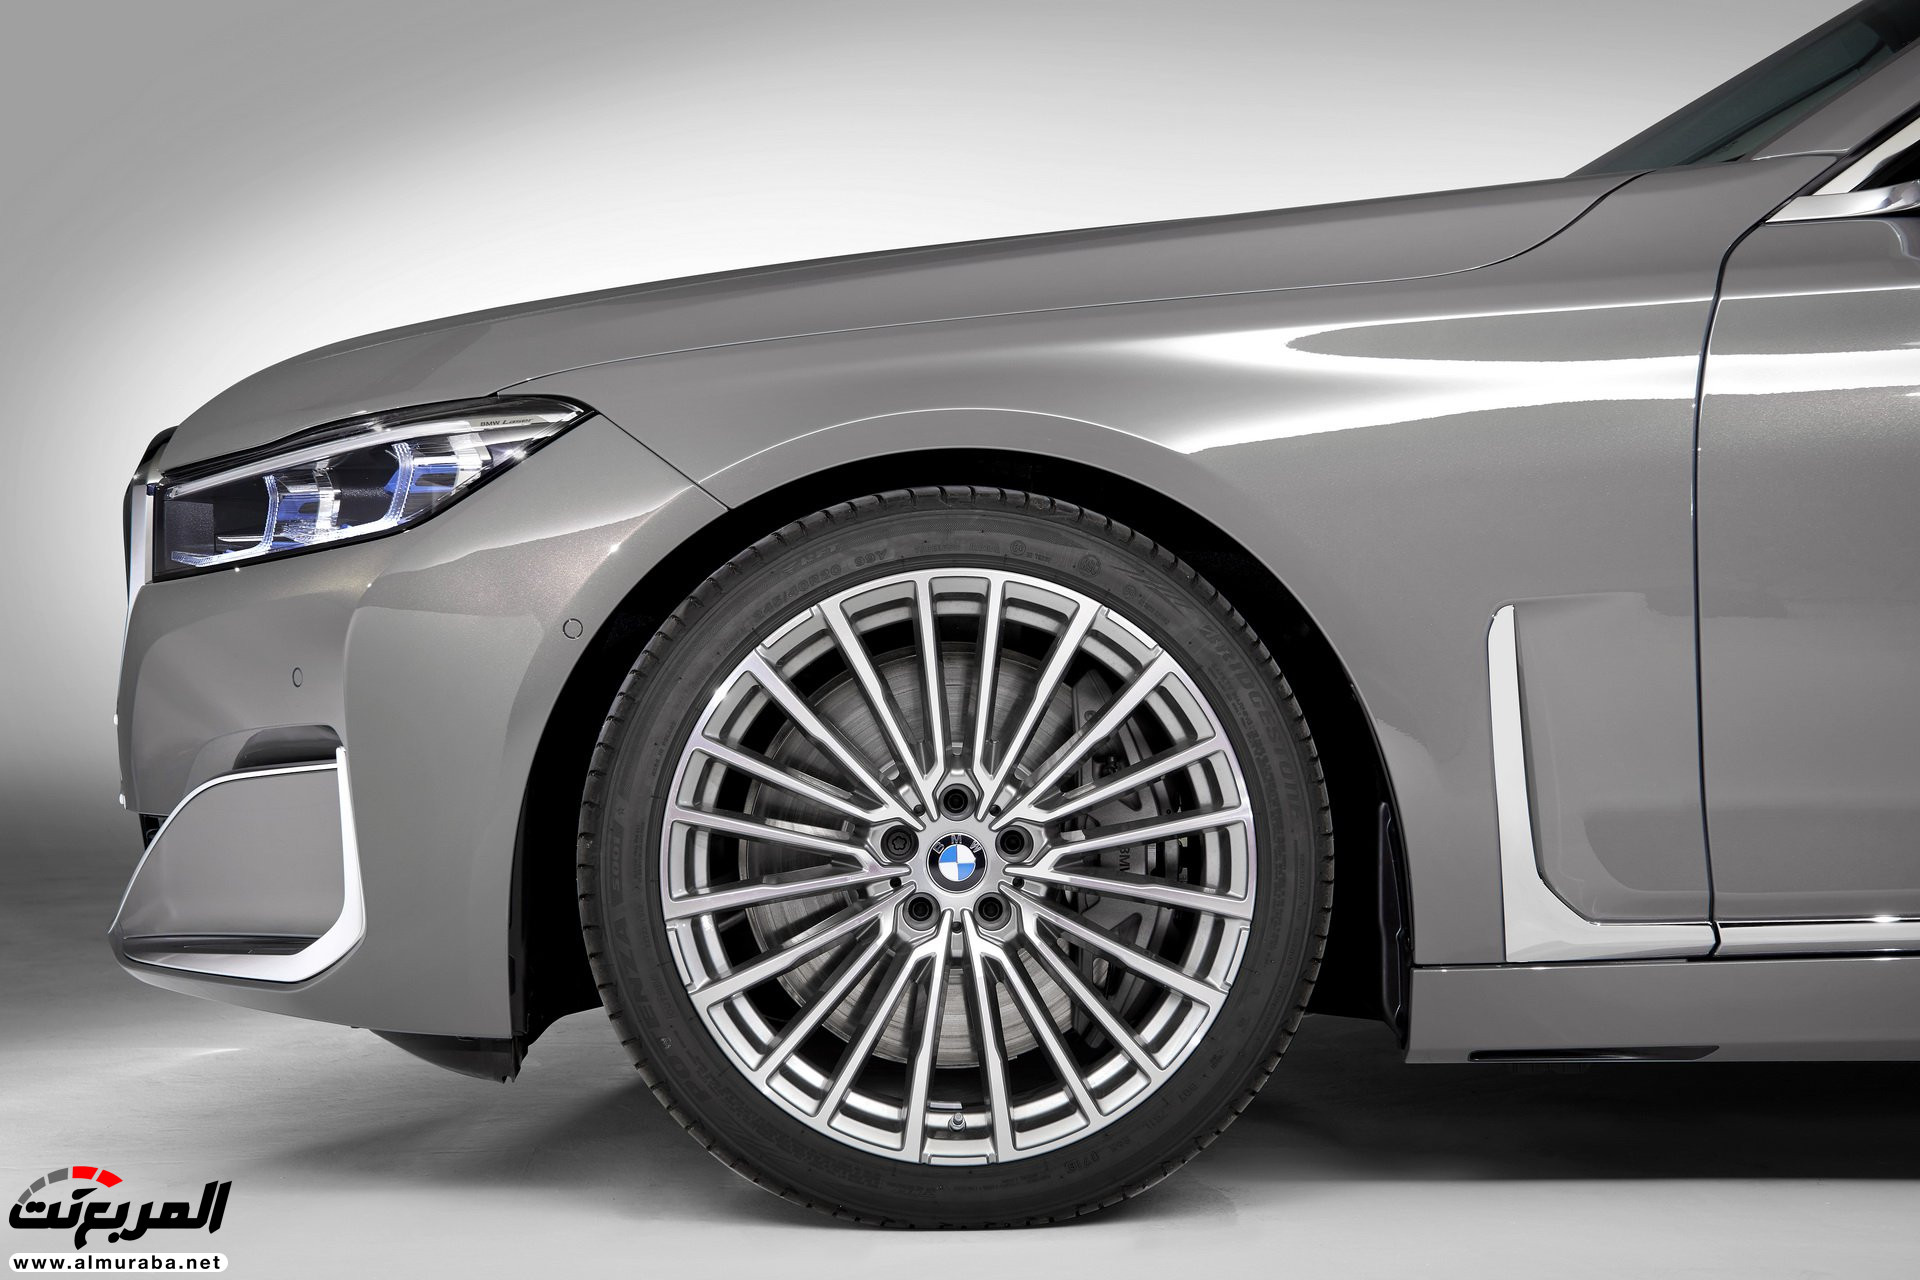 بي ام دبليو الفئة السابعة 2020 المحدثة تكشف نفسها رسمياً "صور ومواصفات" BMW 7 Series 293